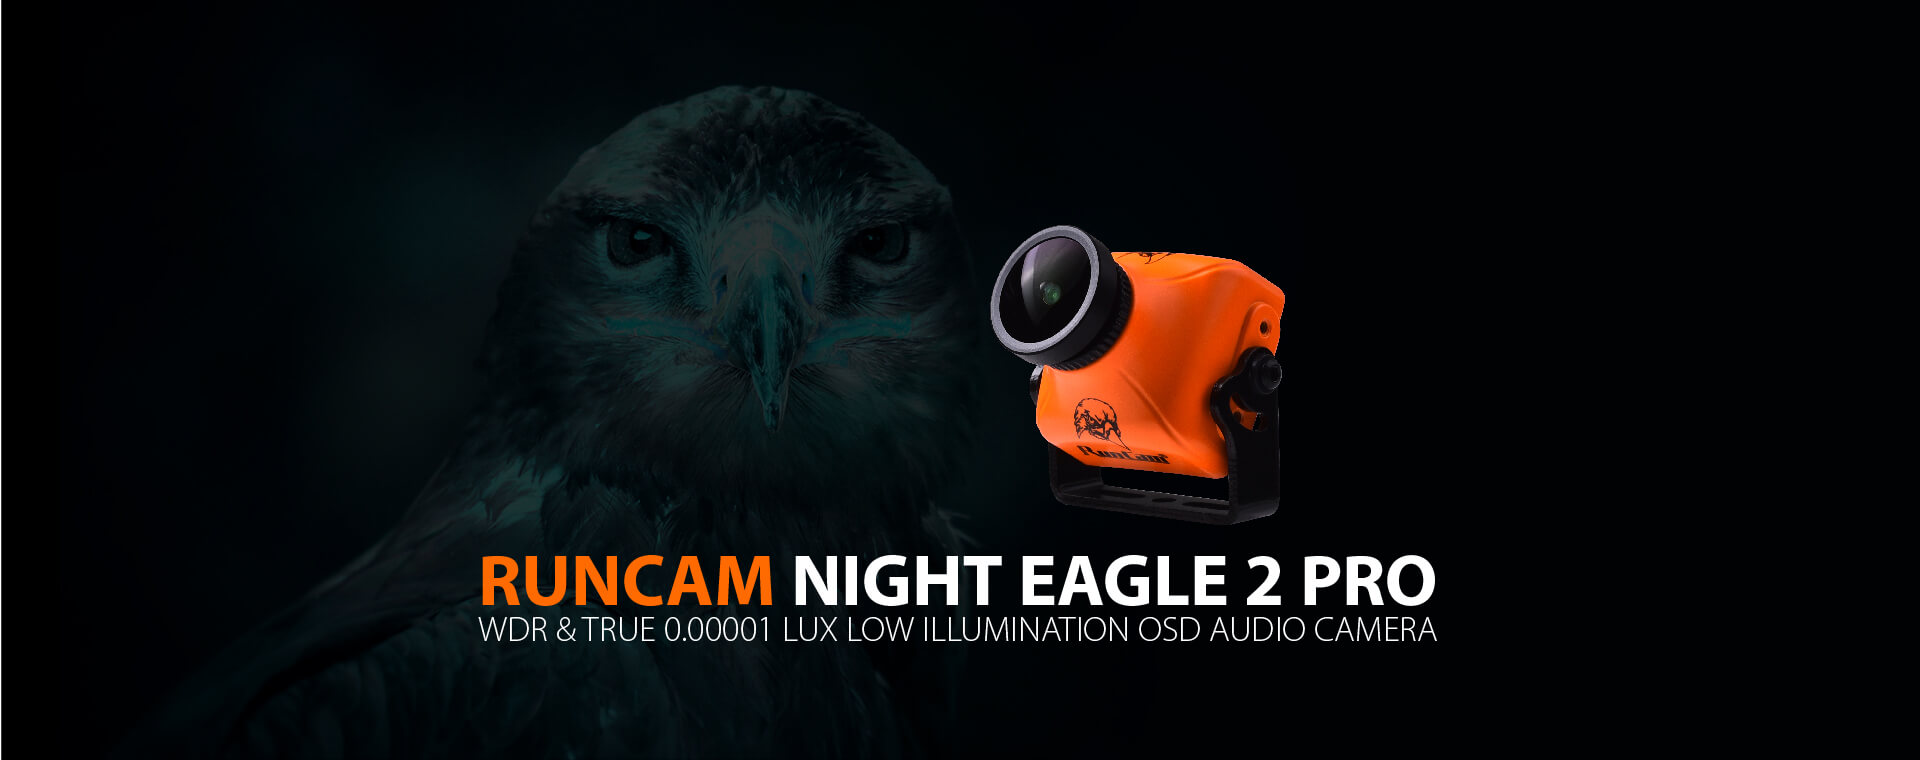 RunCam Night Eagle 2 Pro